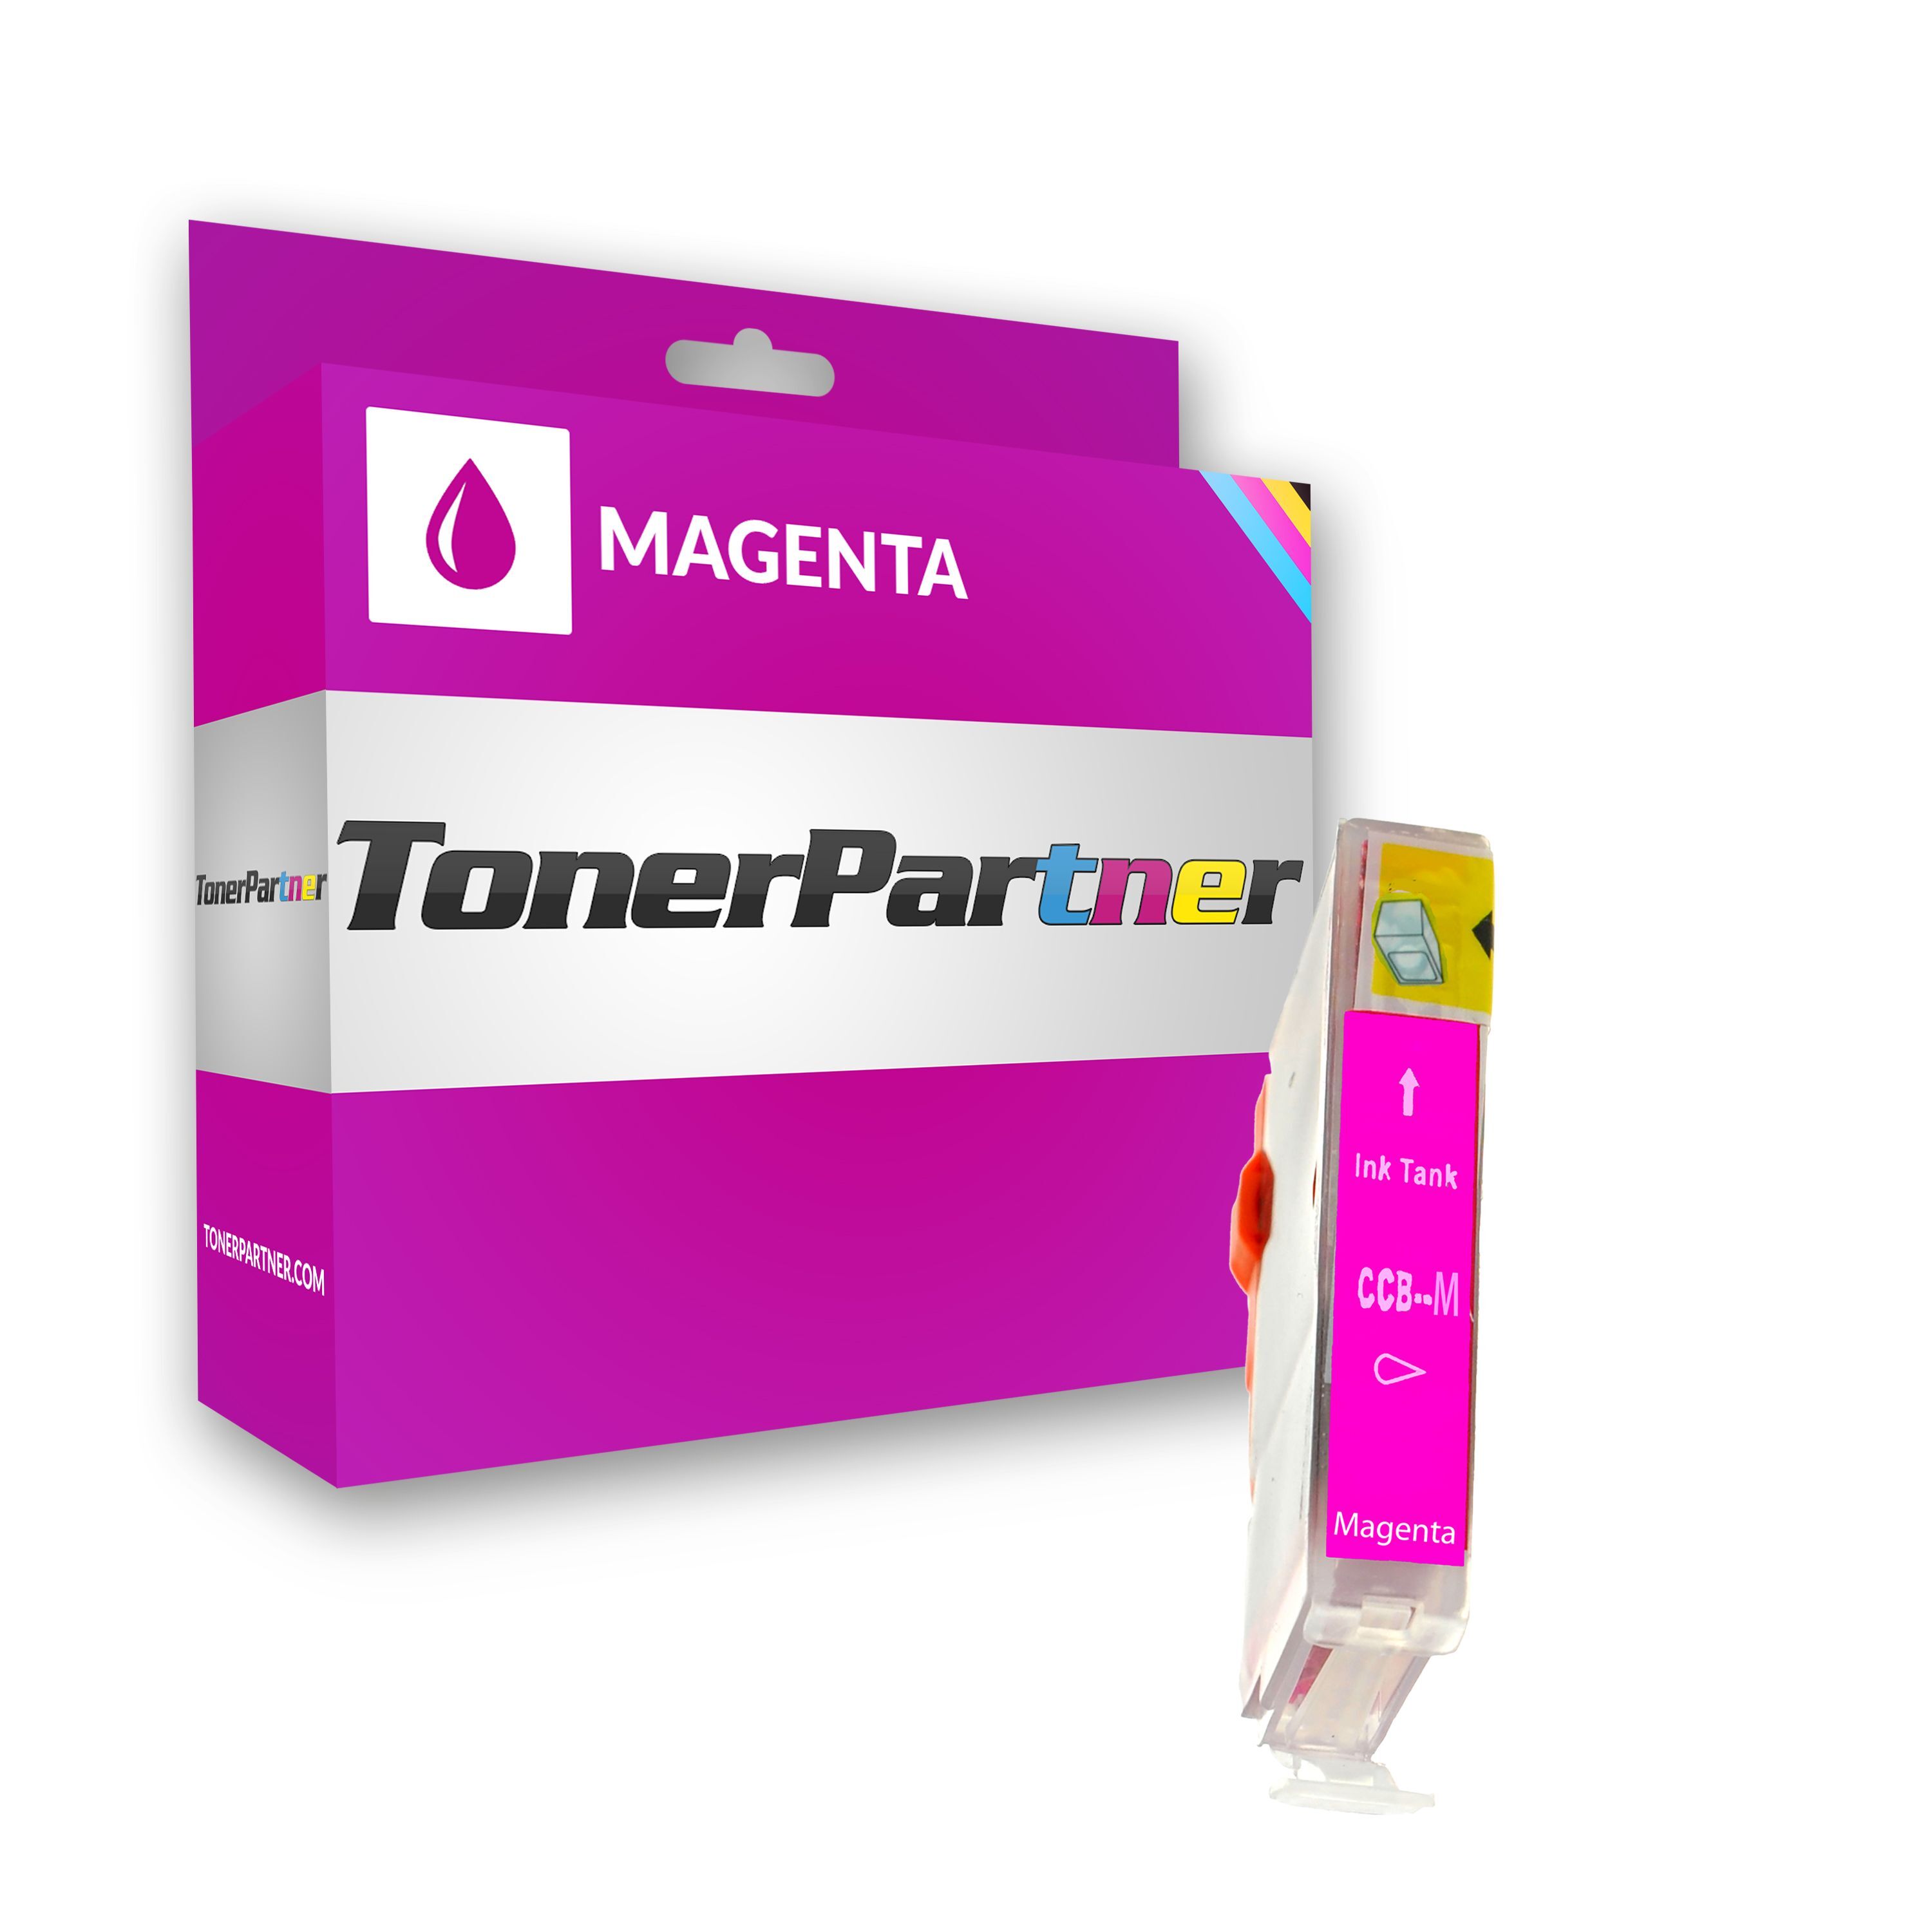 TonerPartner Kompatibel zu Canon MPF 50 Tintenpatrone (BCI-3 EM / 4481 A 002) magenta, 400 Seiten, 0,86 Rp pro Seite, Inhalt: 12 ml von TonerPartner